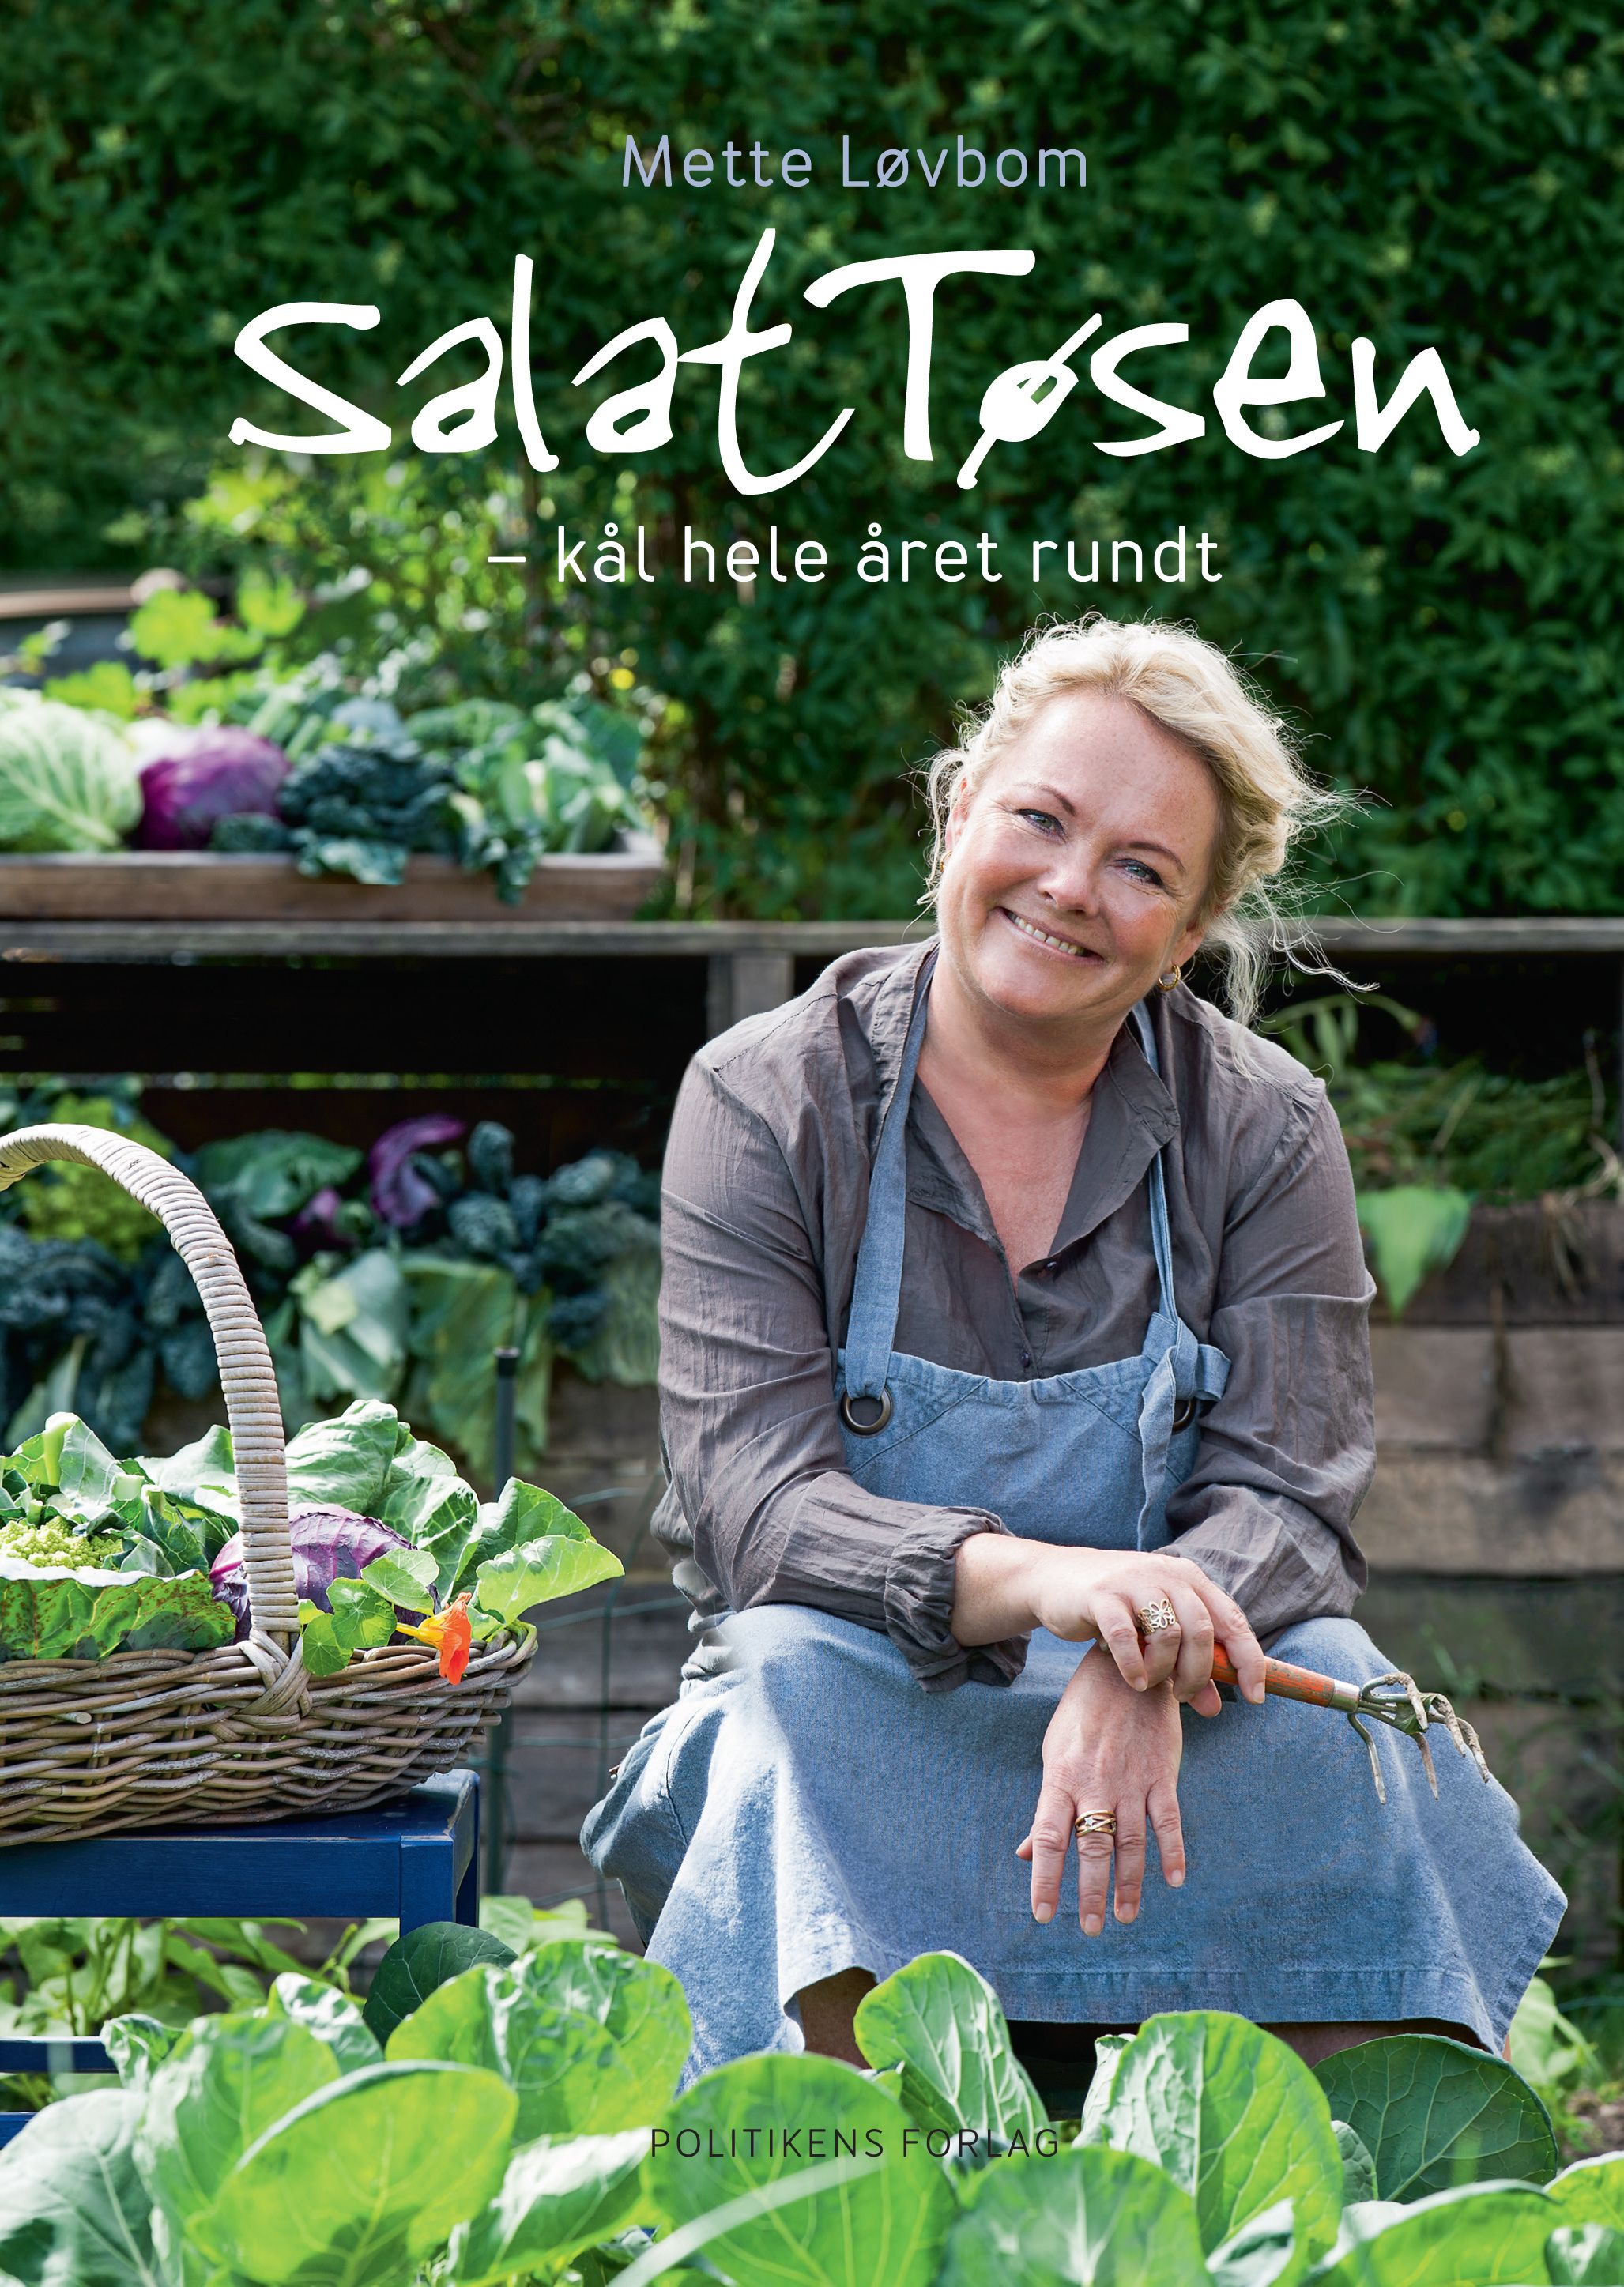 Salattøsen - Kål hele året rundt, e-bok av Mette Løvbom